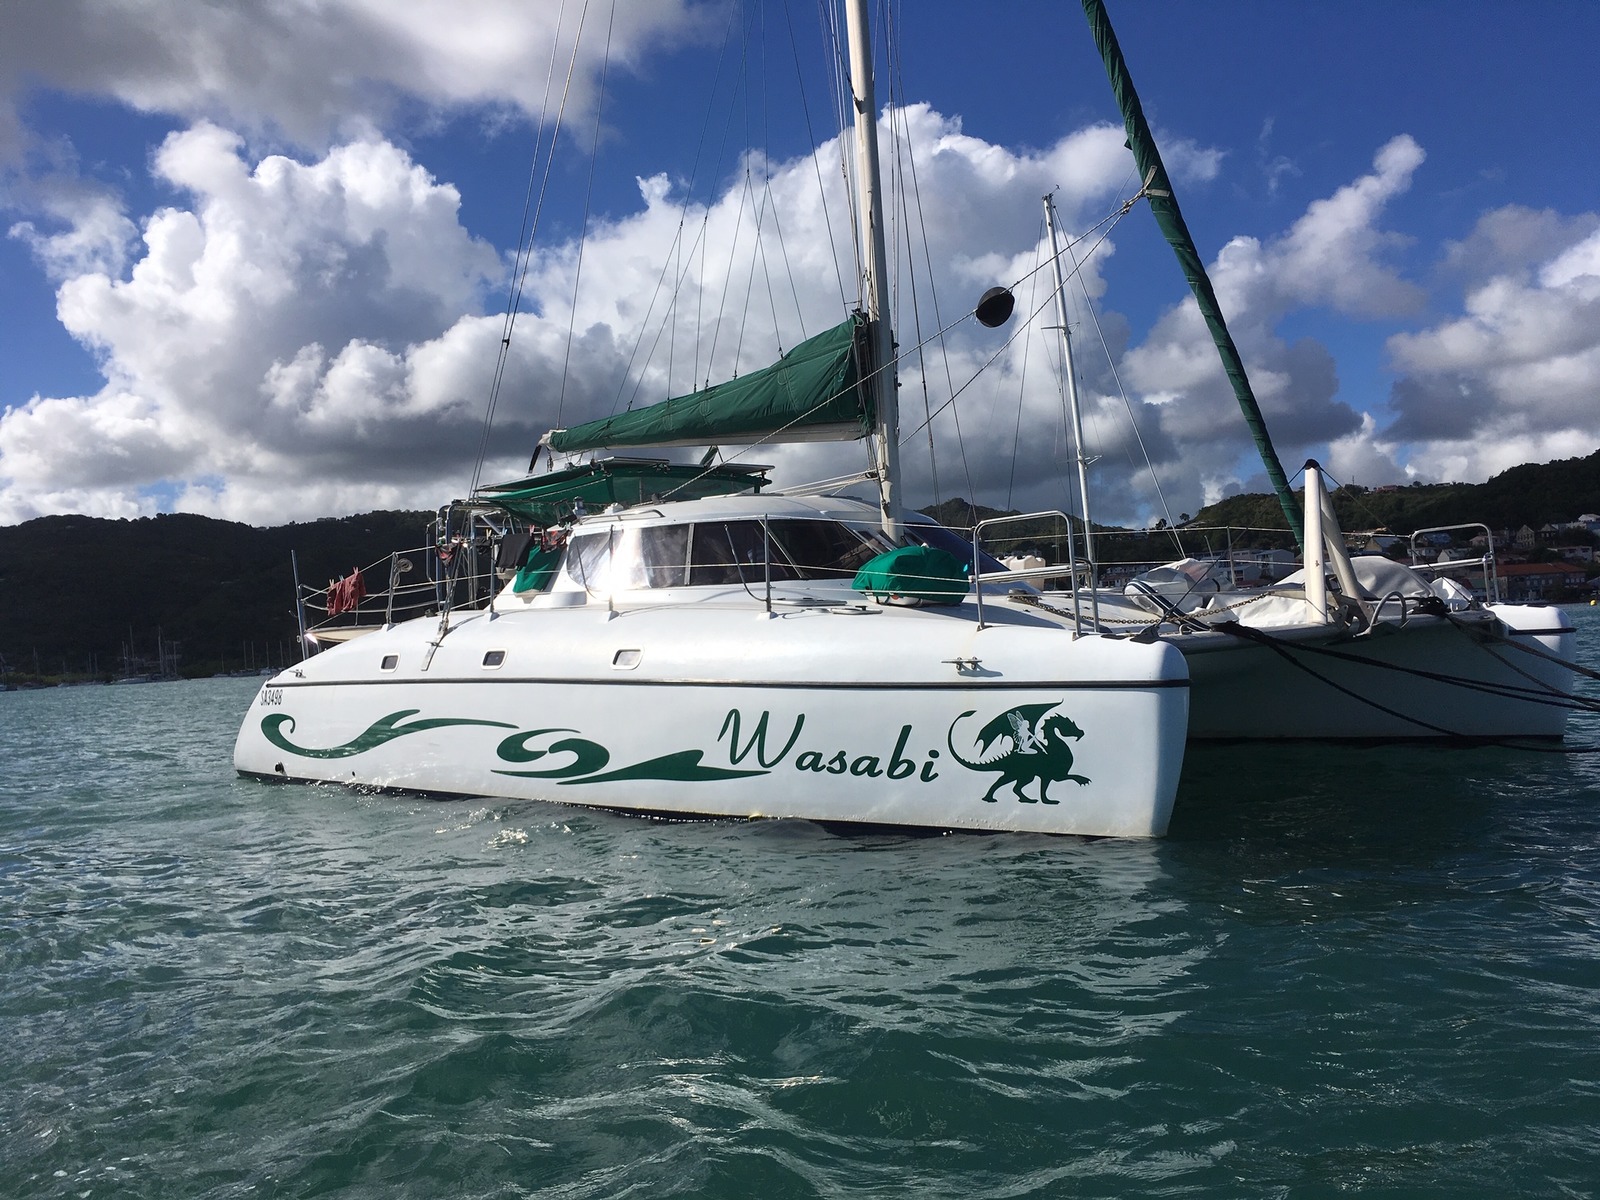 wildcat 350 catamaran